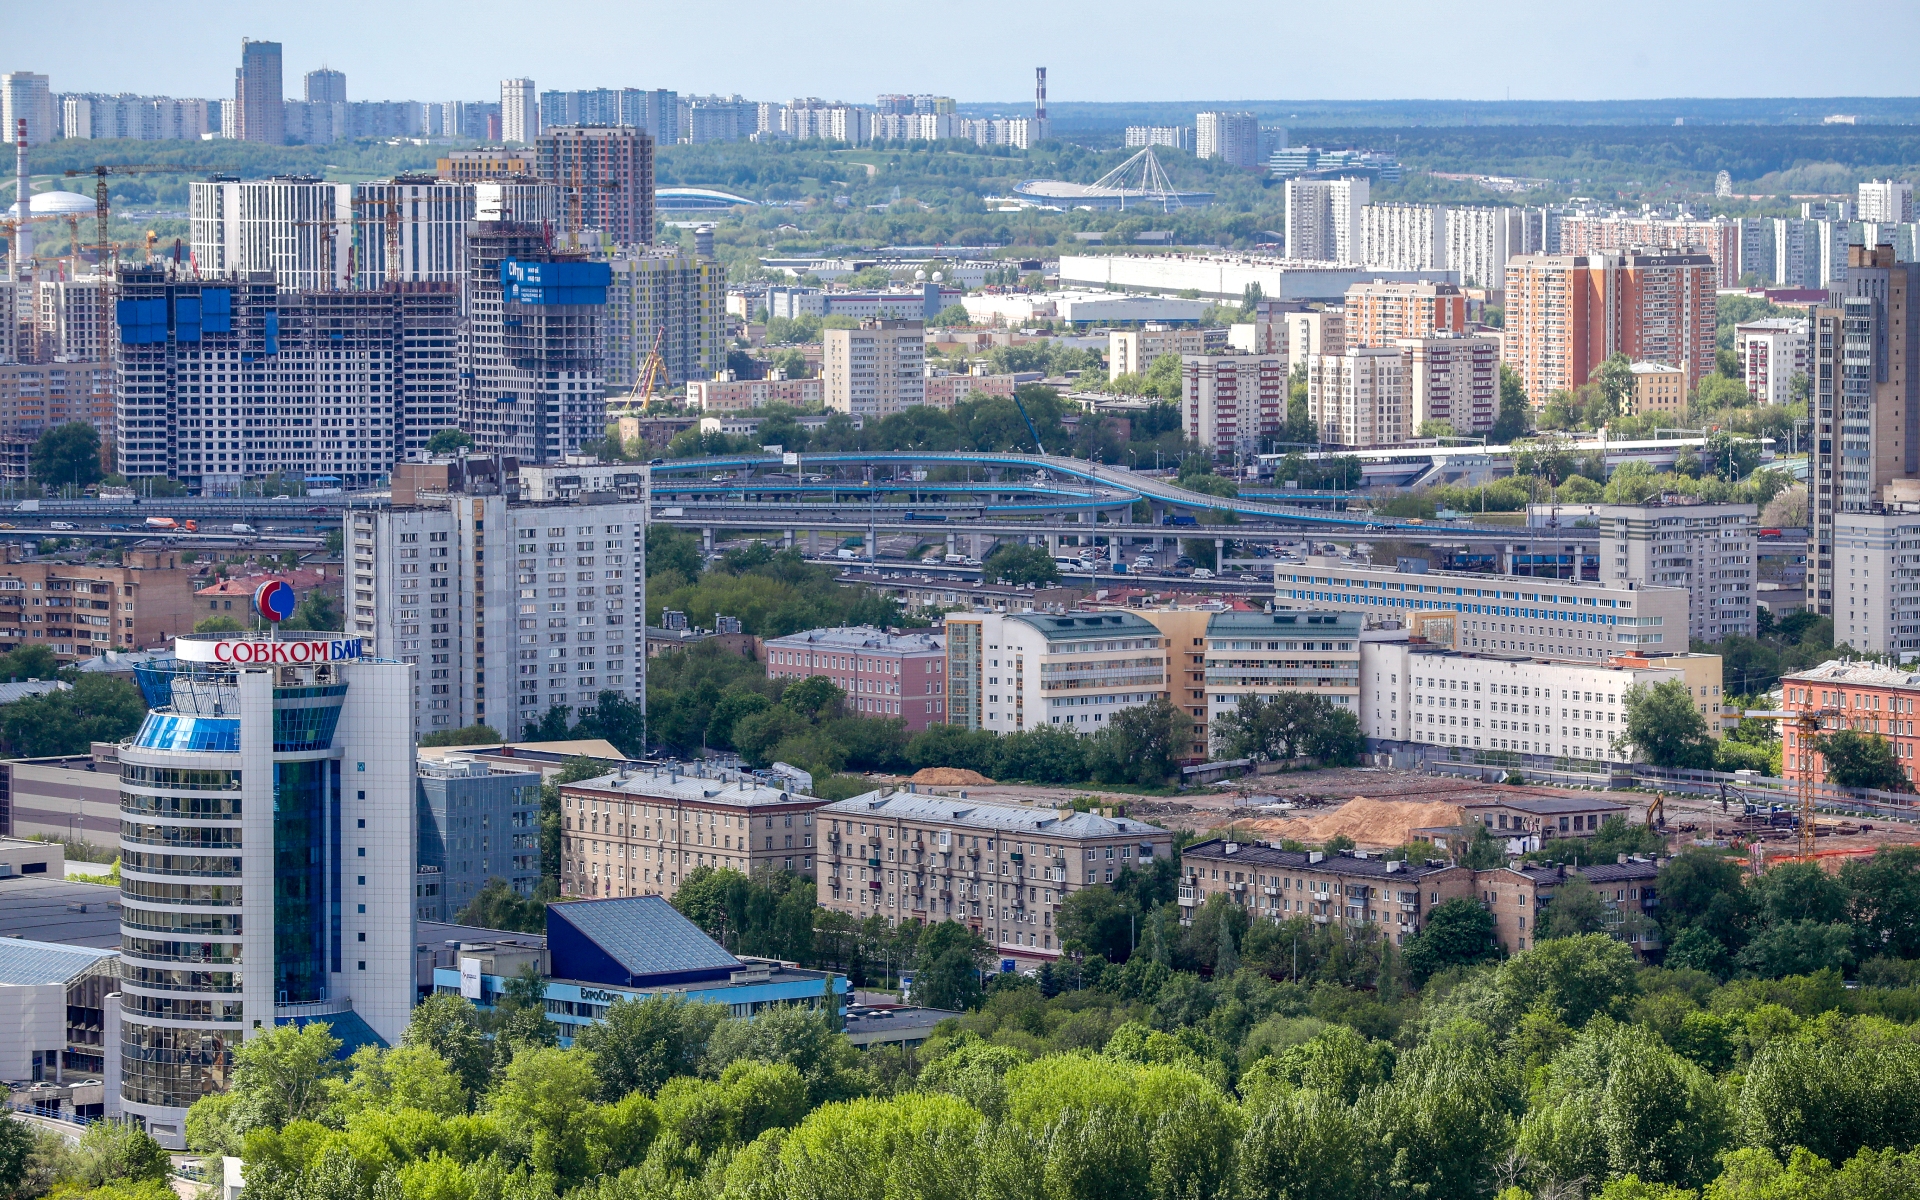 В настоящее время в продаже на первичном рынке Старой Москвы находится 12 тыс. квартир и апартаментов бизнес-класса. Средняя цена 1 кв. м составляет 385,6 тыс. руб.